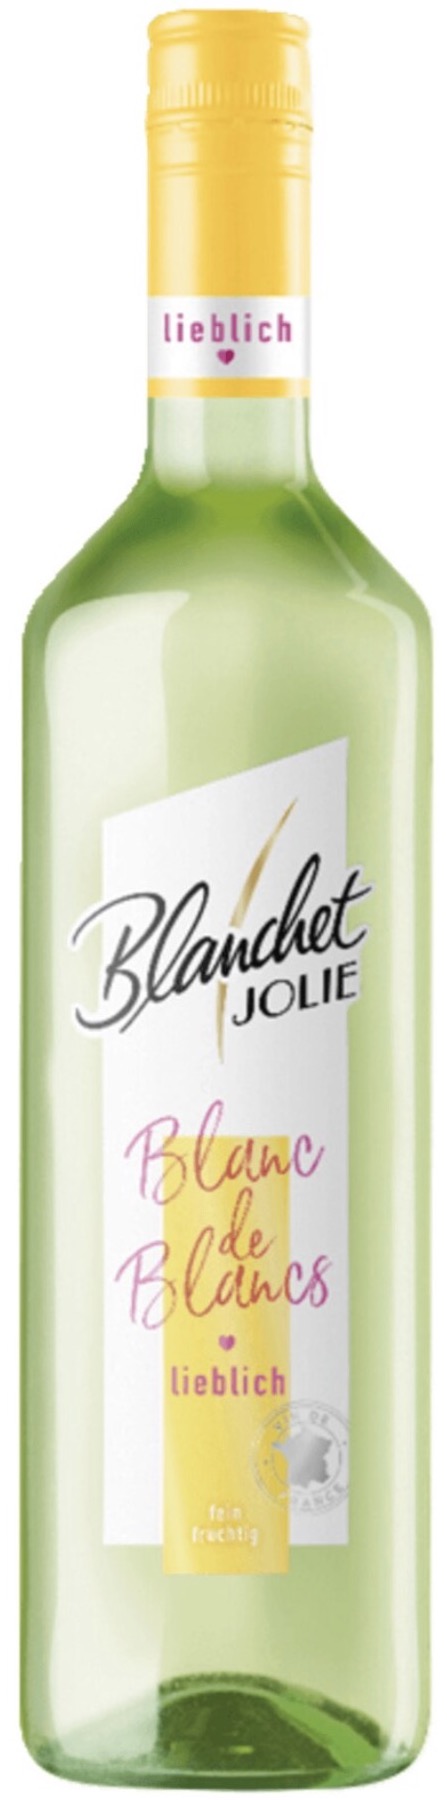 Blanchet Jolie Blanc de Blancs lieblich 11% vol. 0,75L